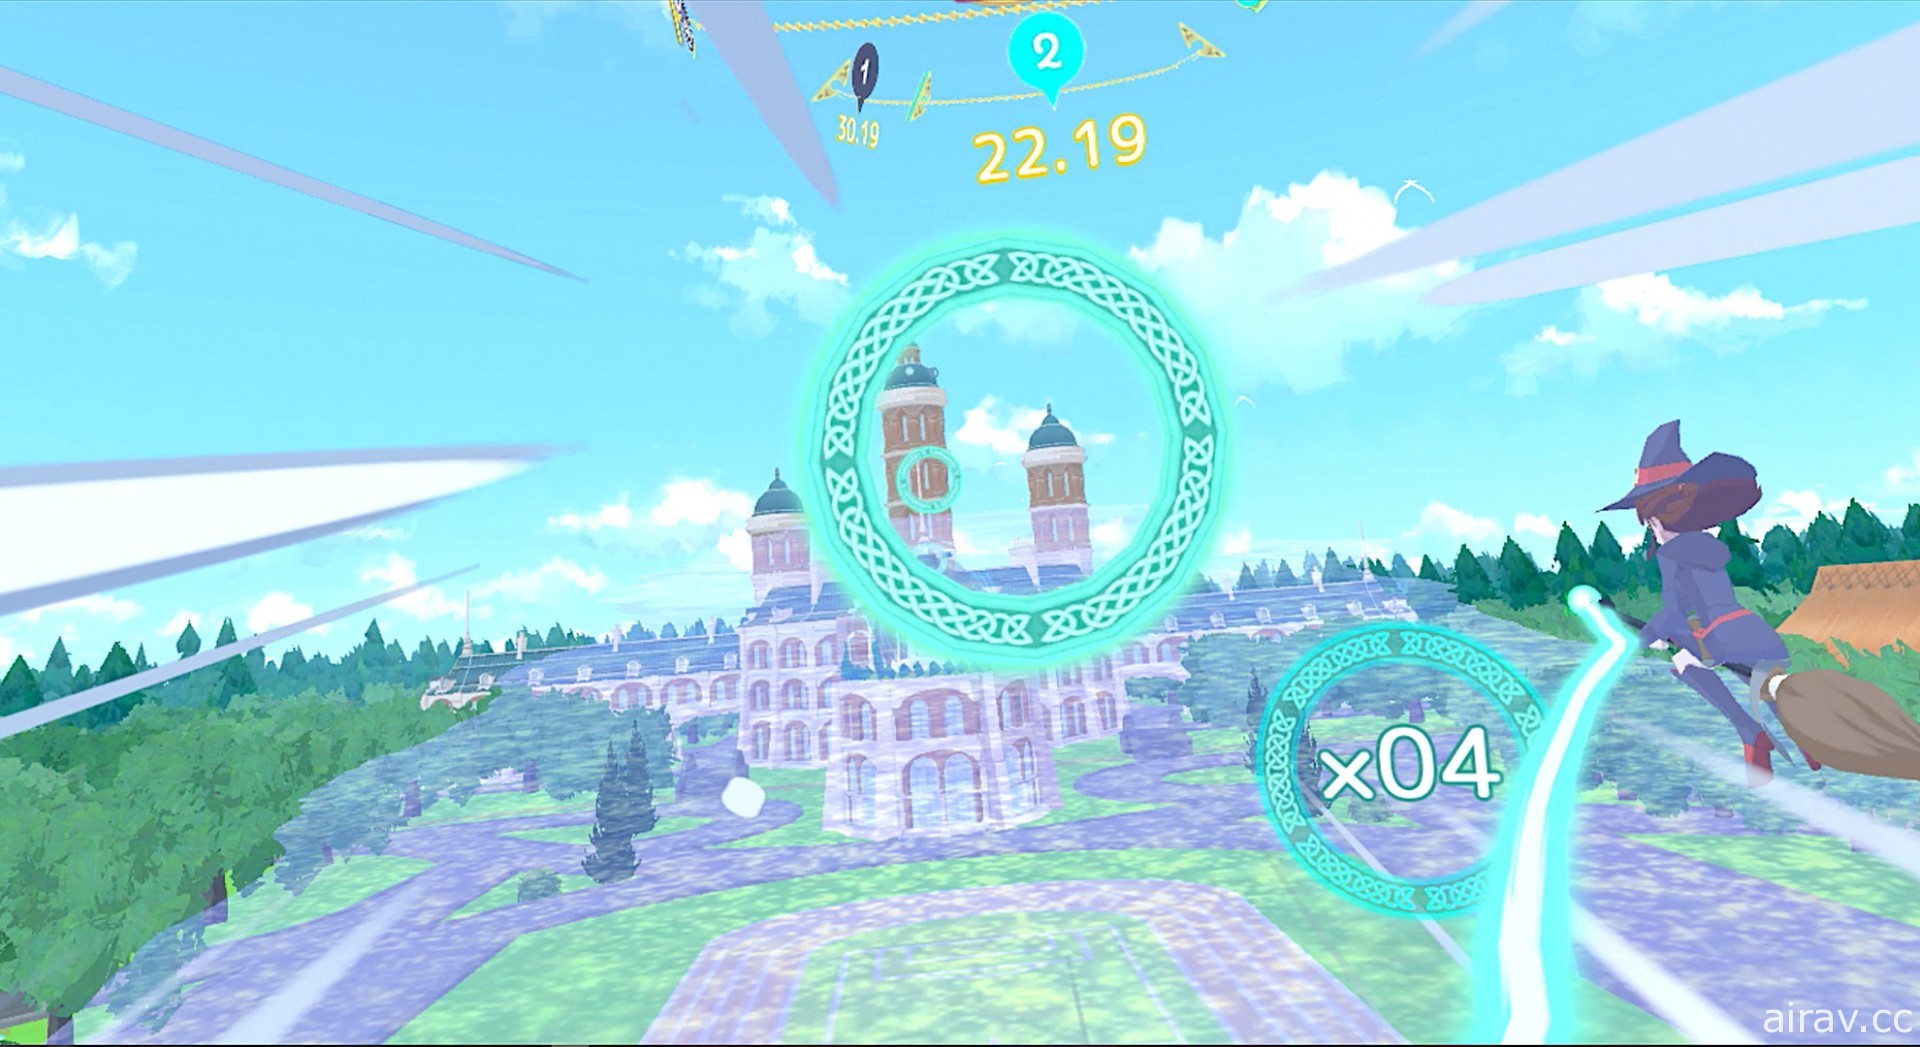 VR 競速遊戲《小魔女學園 VR 向掃帚星許願》7 月 15 日支援 SteamVR、PSVR 等裝置